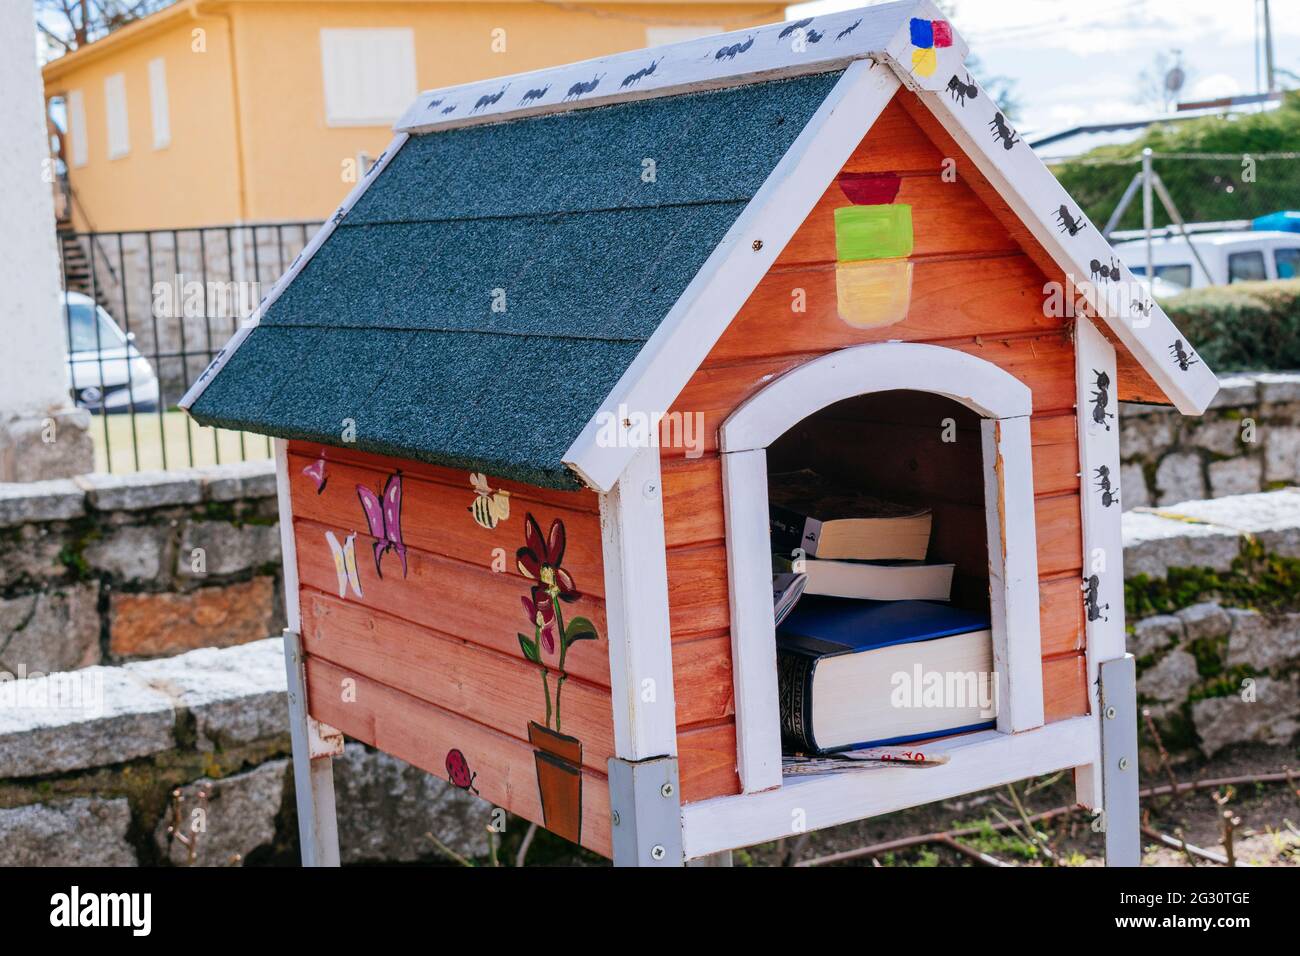 Petite bibliothèque gratuite. Petite maison en bois où les voisins déposent des livres que les autres peuvent lire. Soto del Real, Comunidad de madrid, Espagne, Europe Banque D'Images